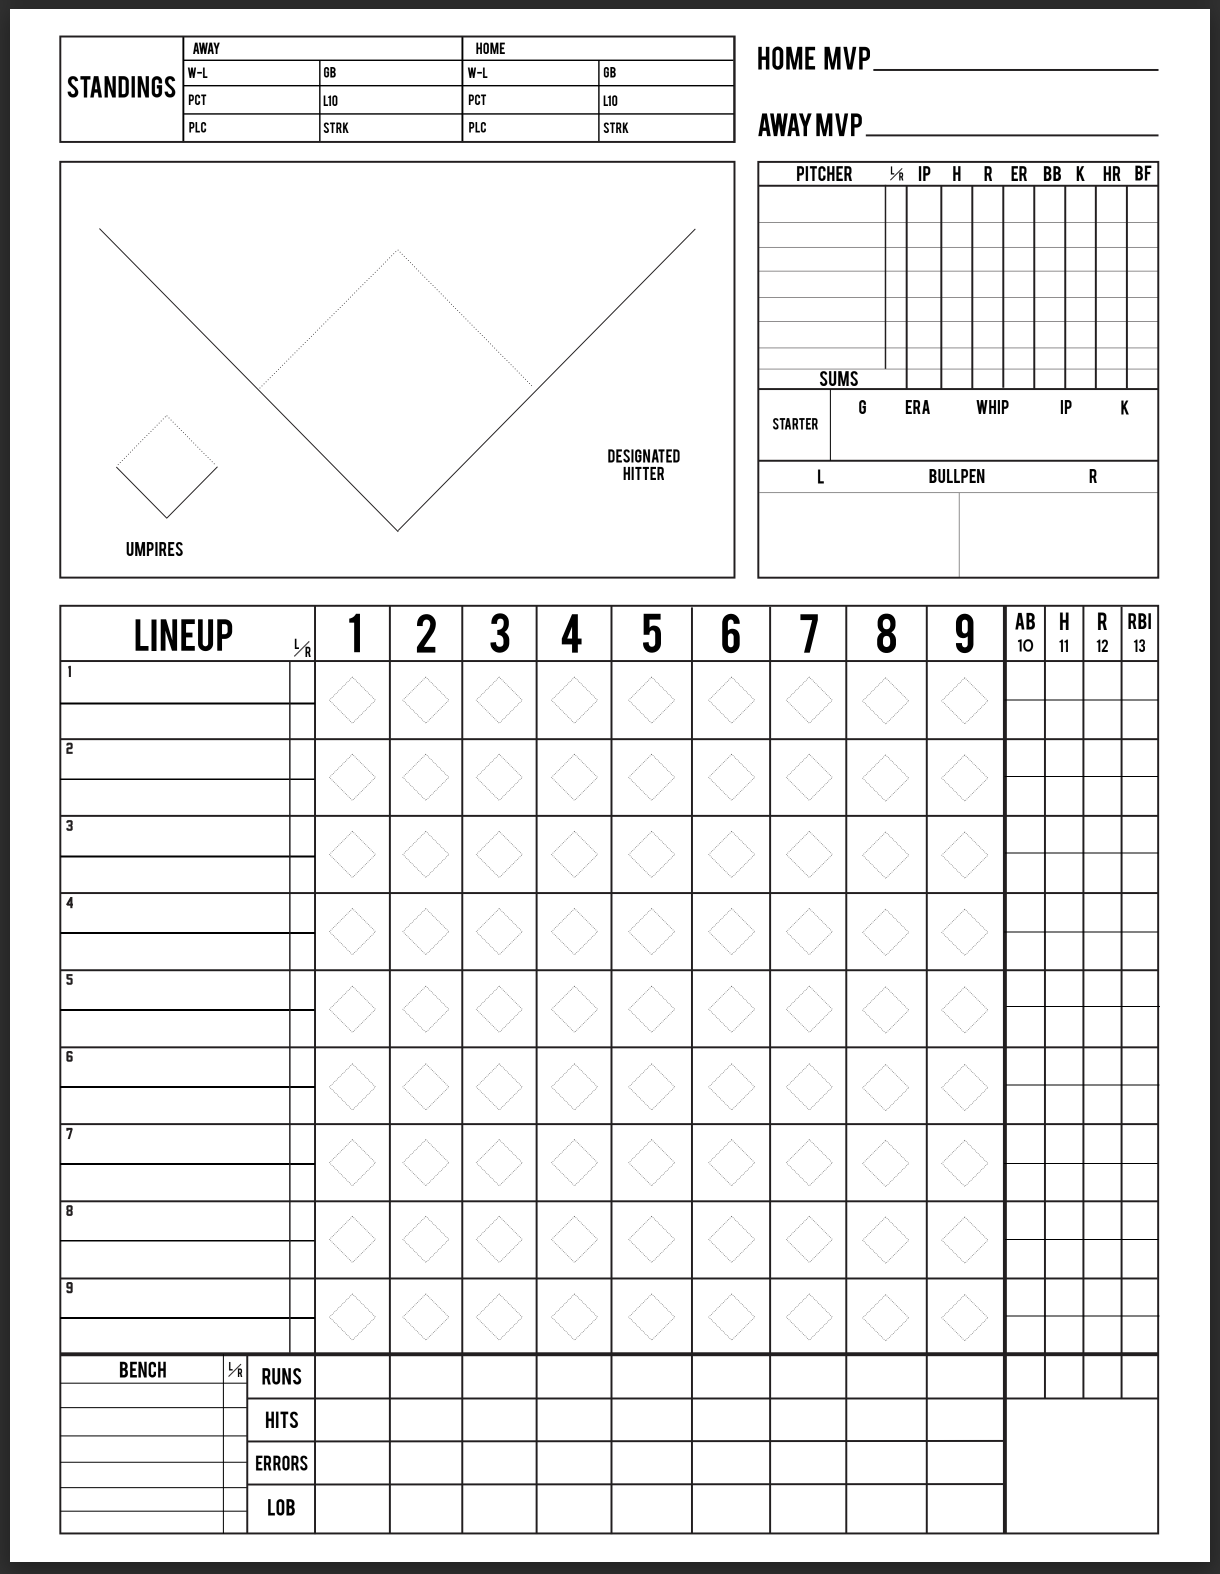 Hilty baseball scorecard, 2nd page.